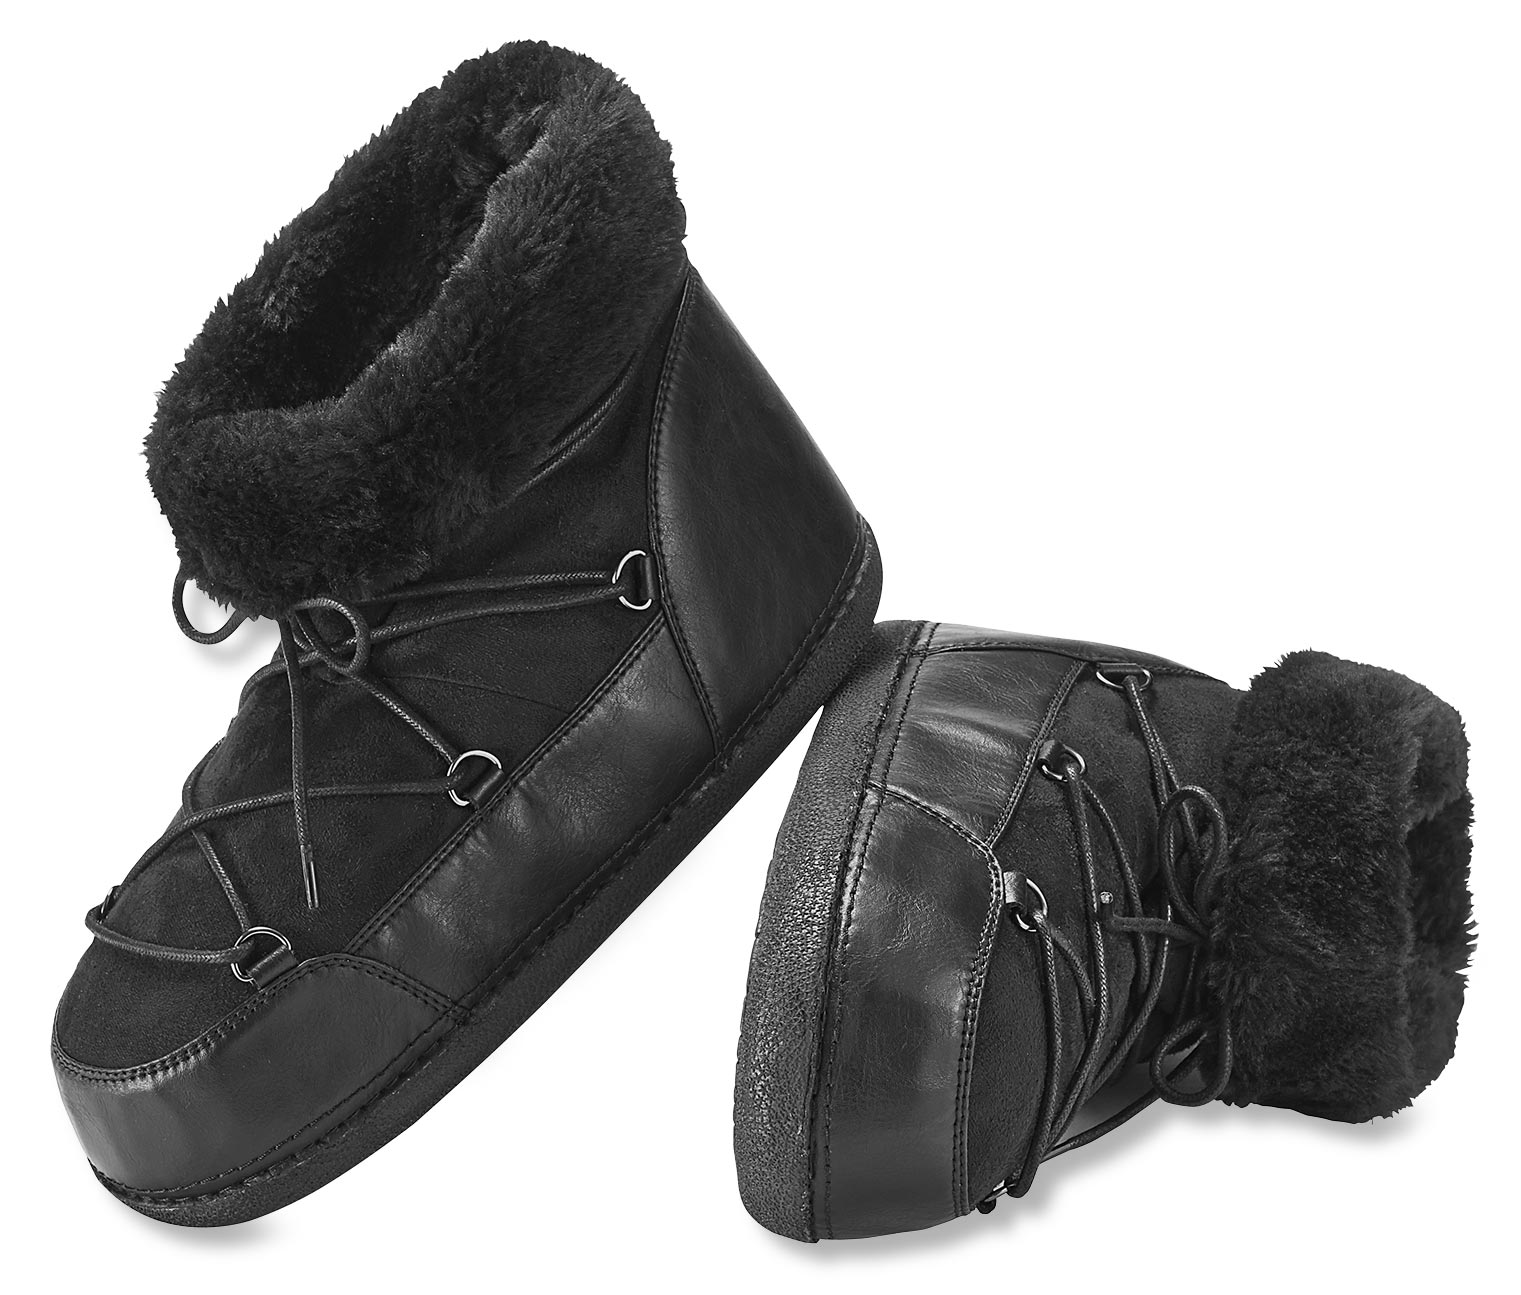 Boots online bestellen bei Tchibo 308178